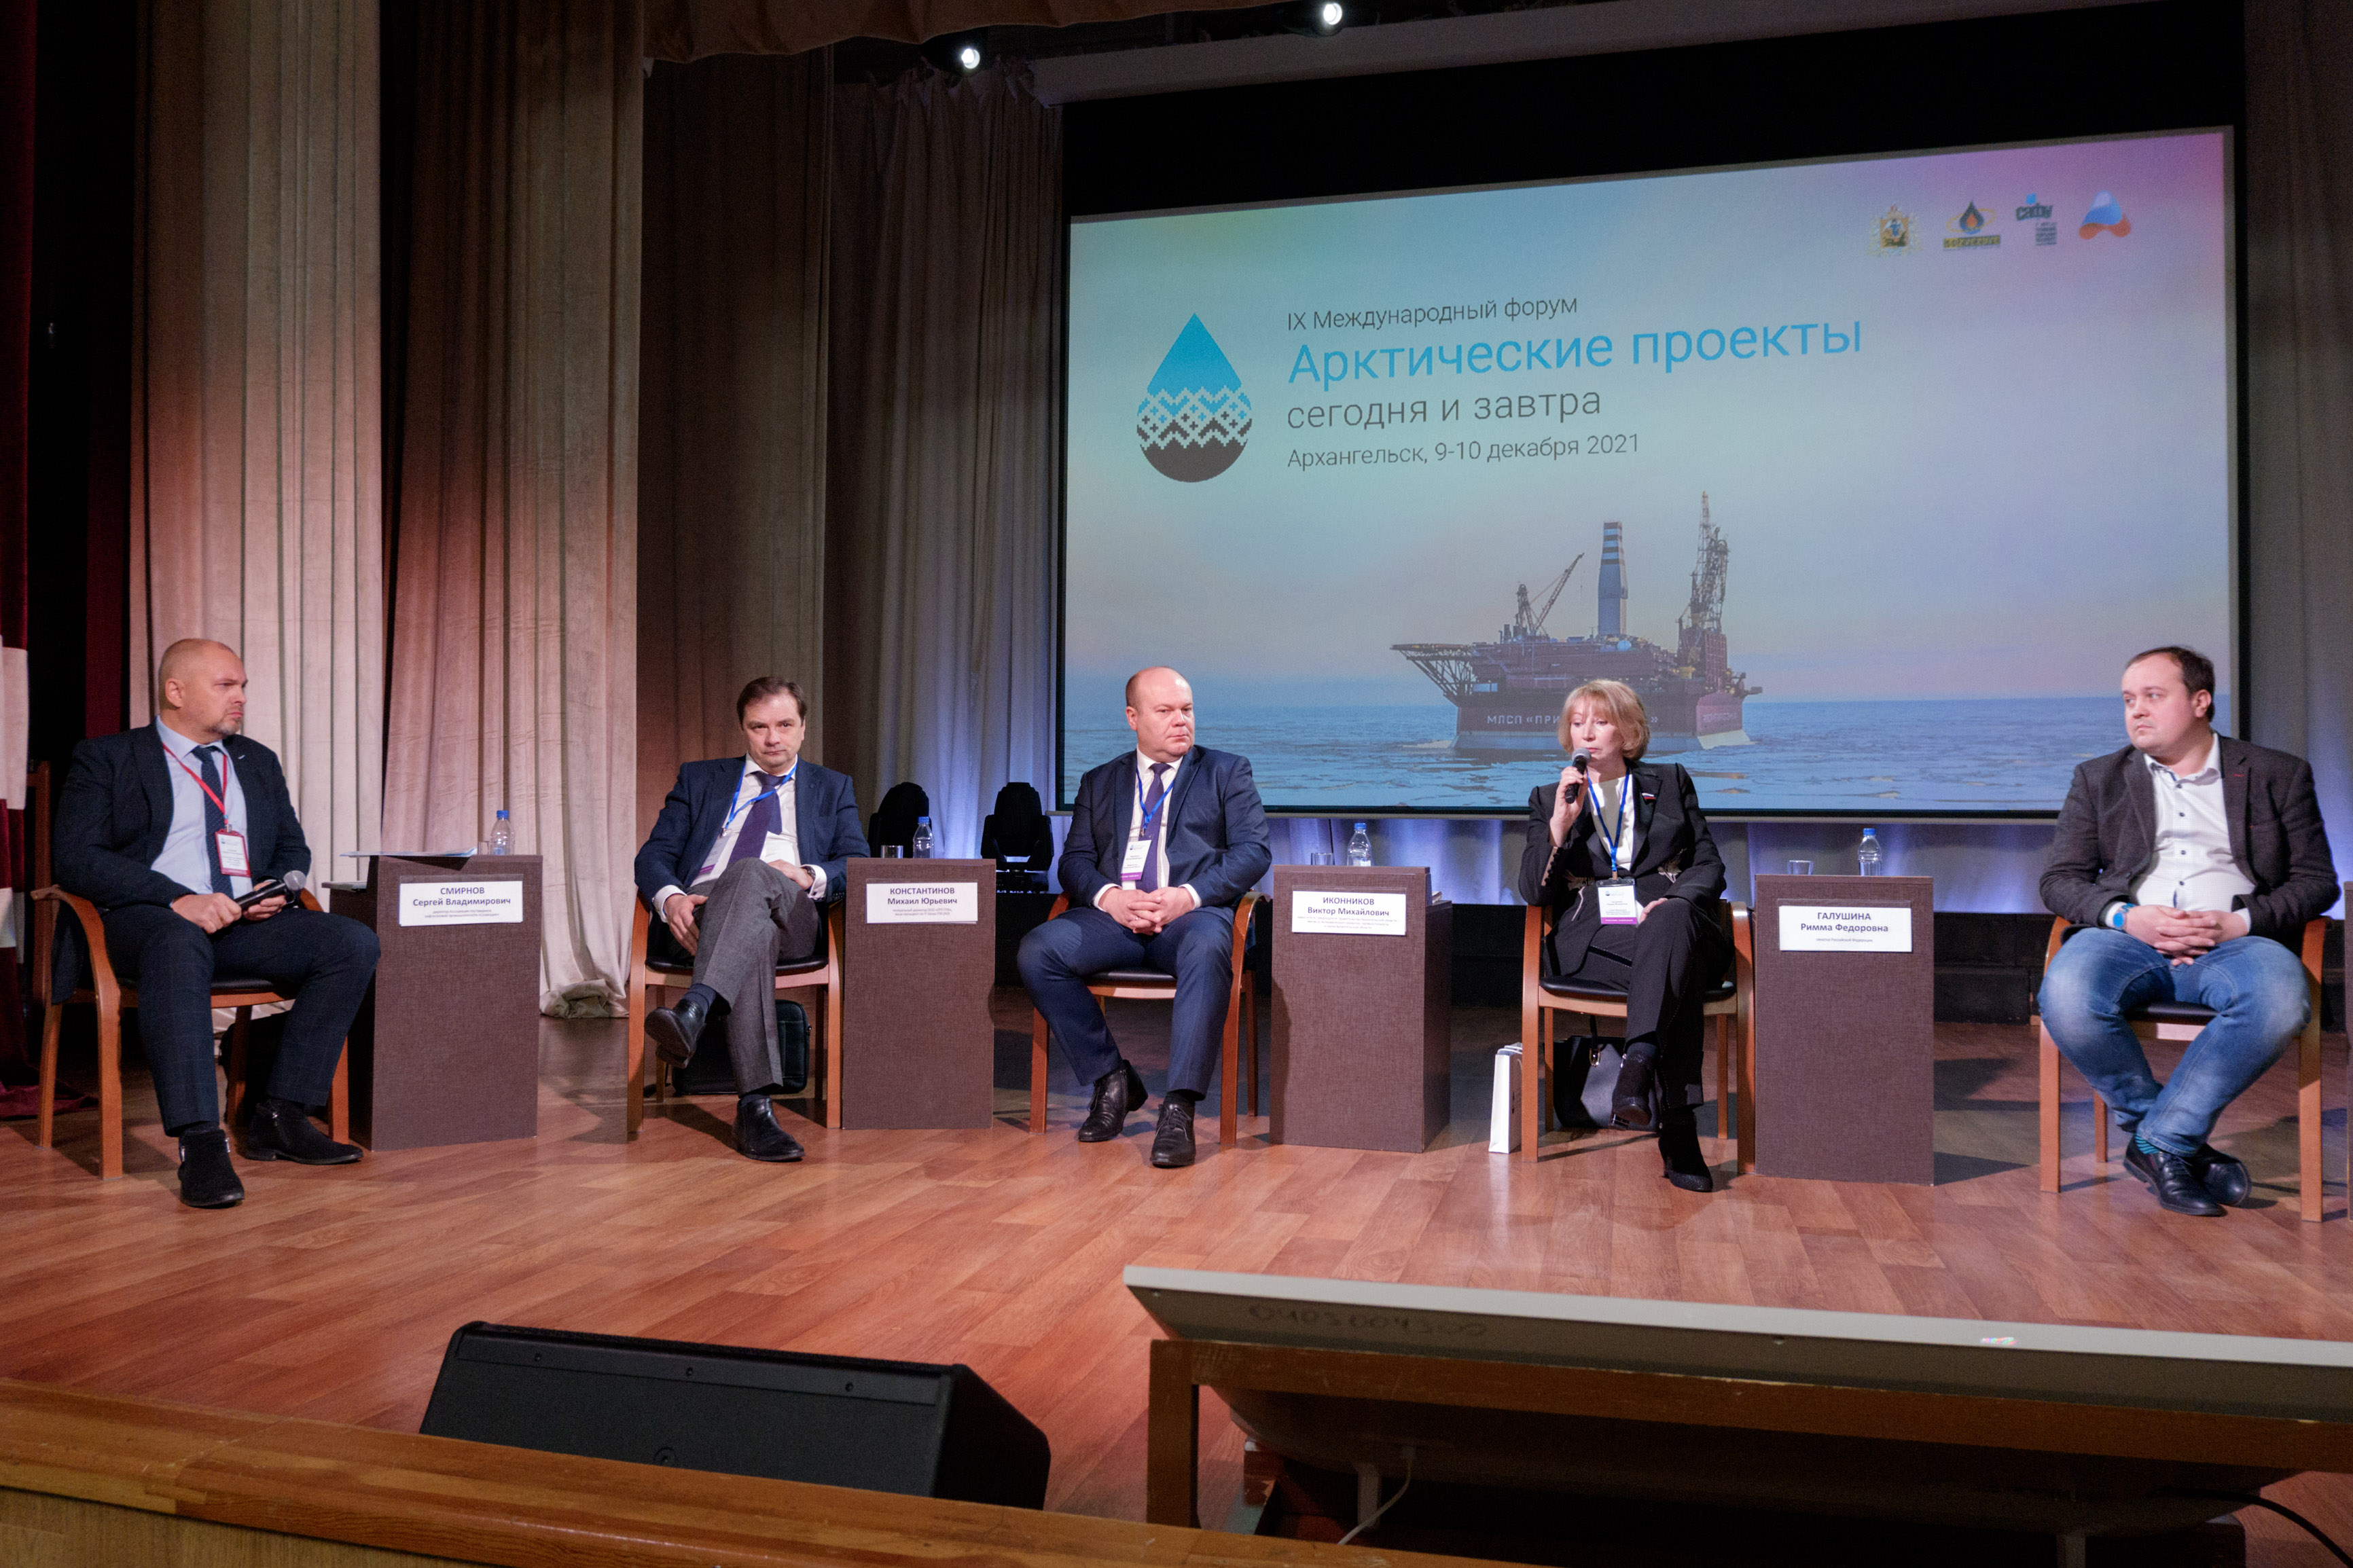 Технологии, кадры, инвестиции: в Архангельске обсудили будущее проектов в Арктике